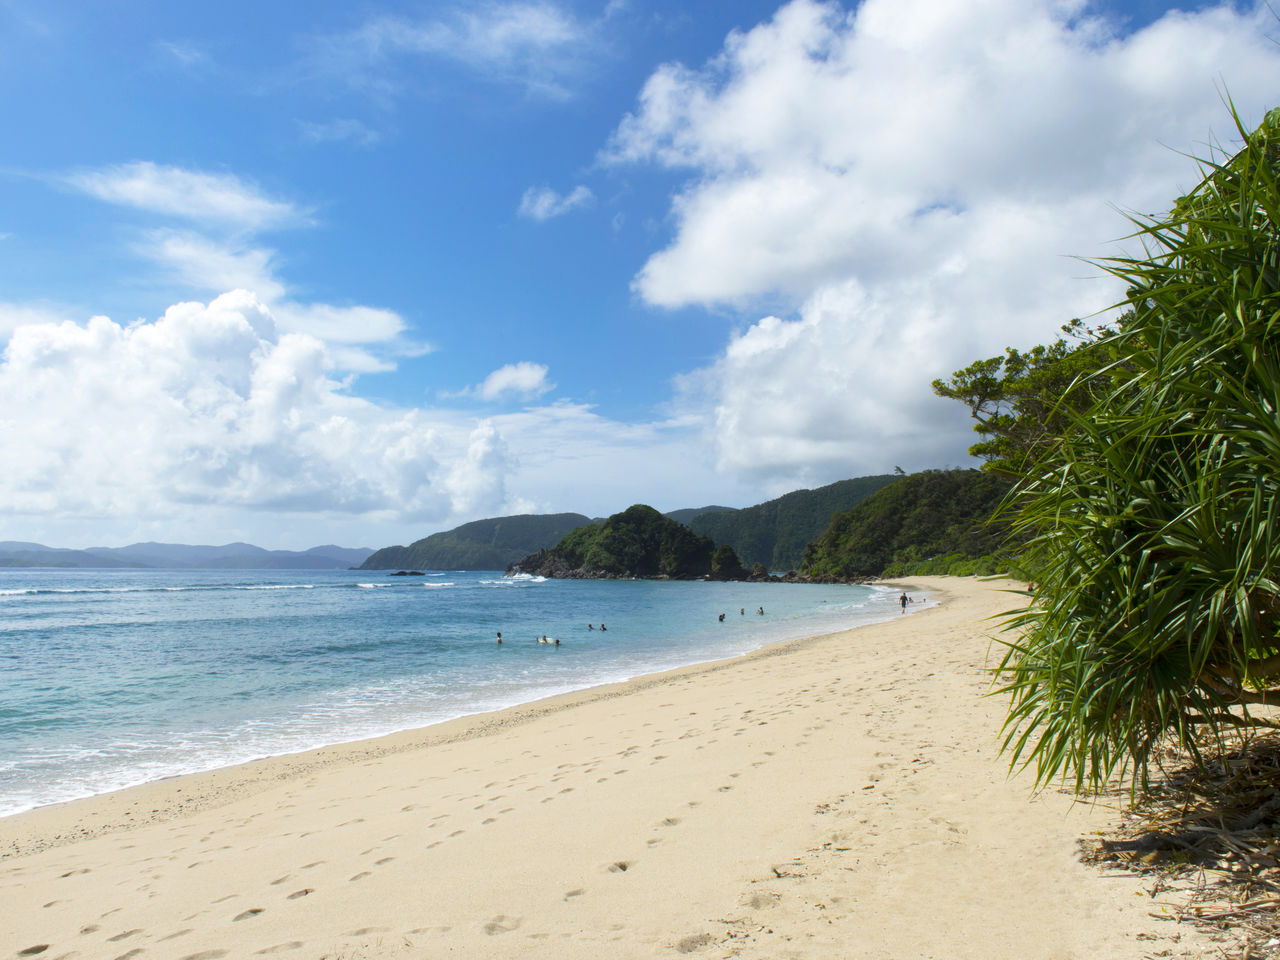 La playa de Yadorihama ofrece un hermoso contraste entre la arena blanca y el azul del mar.